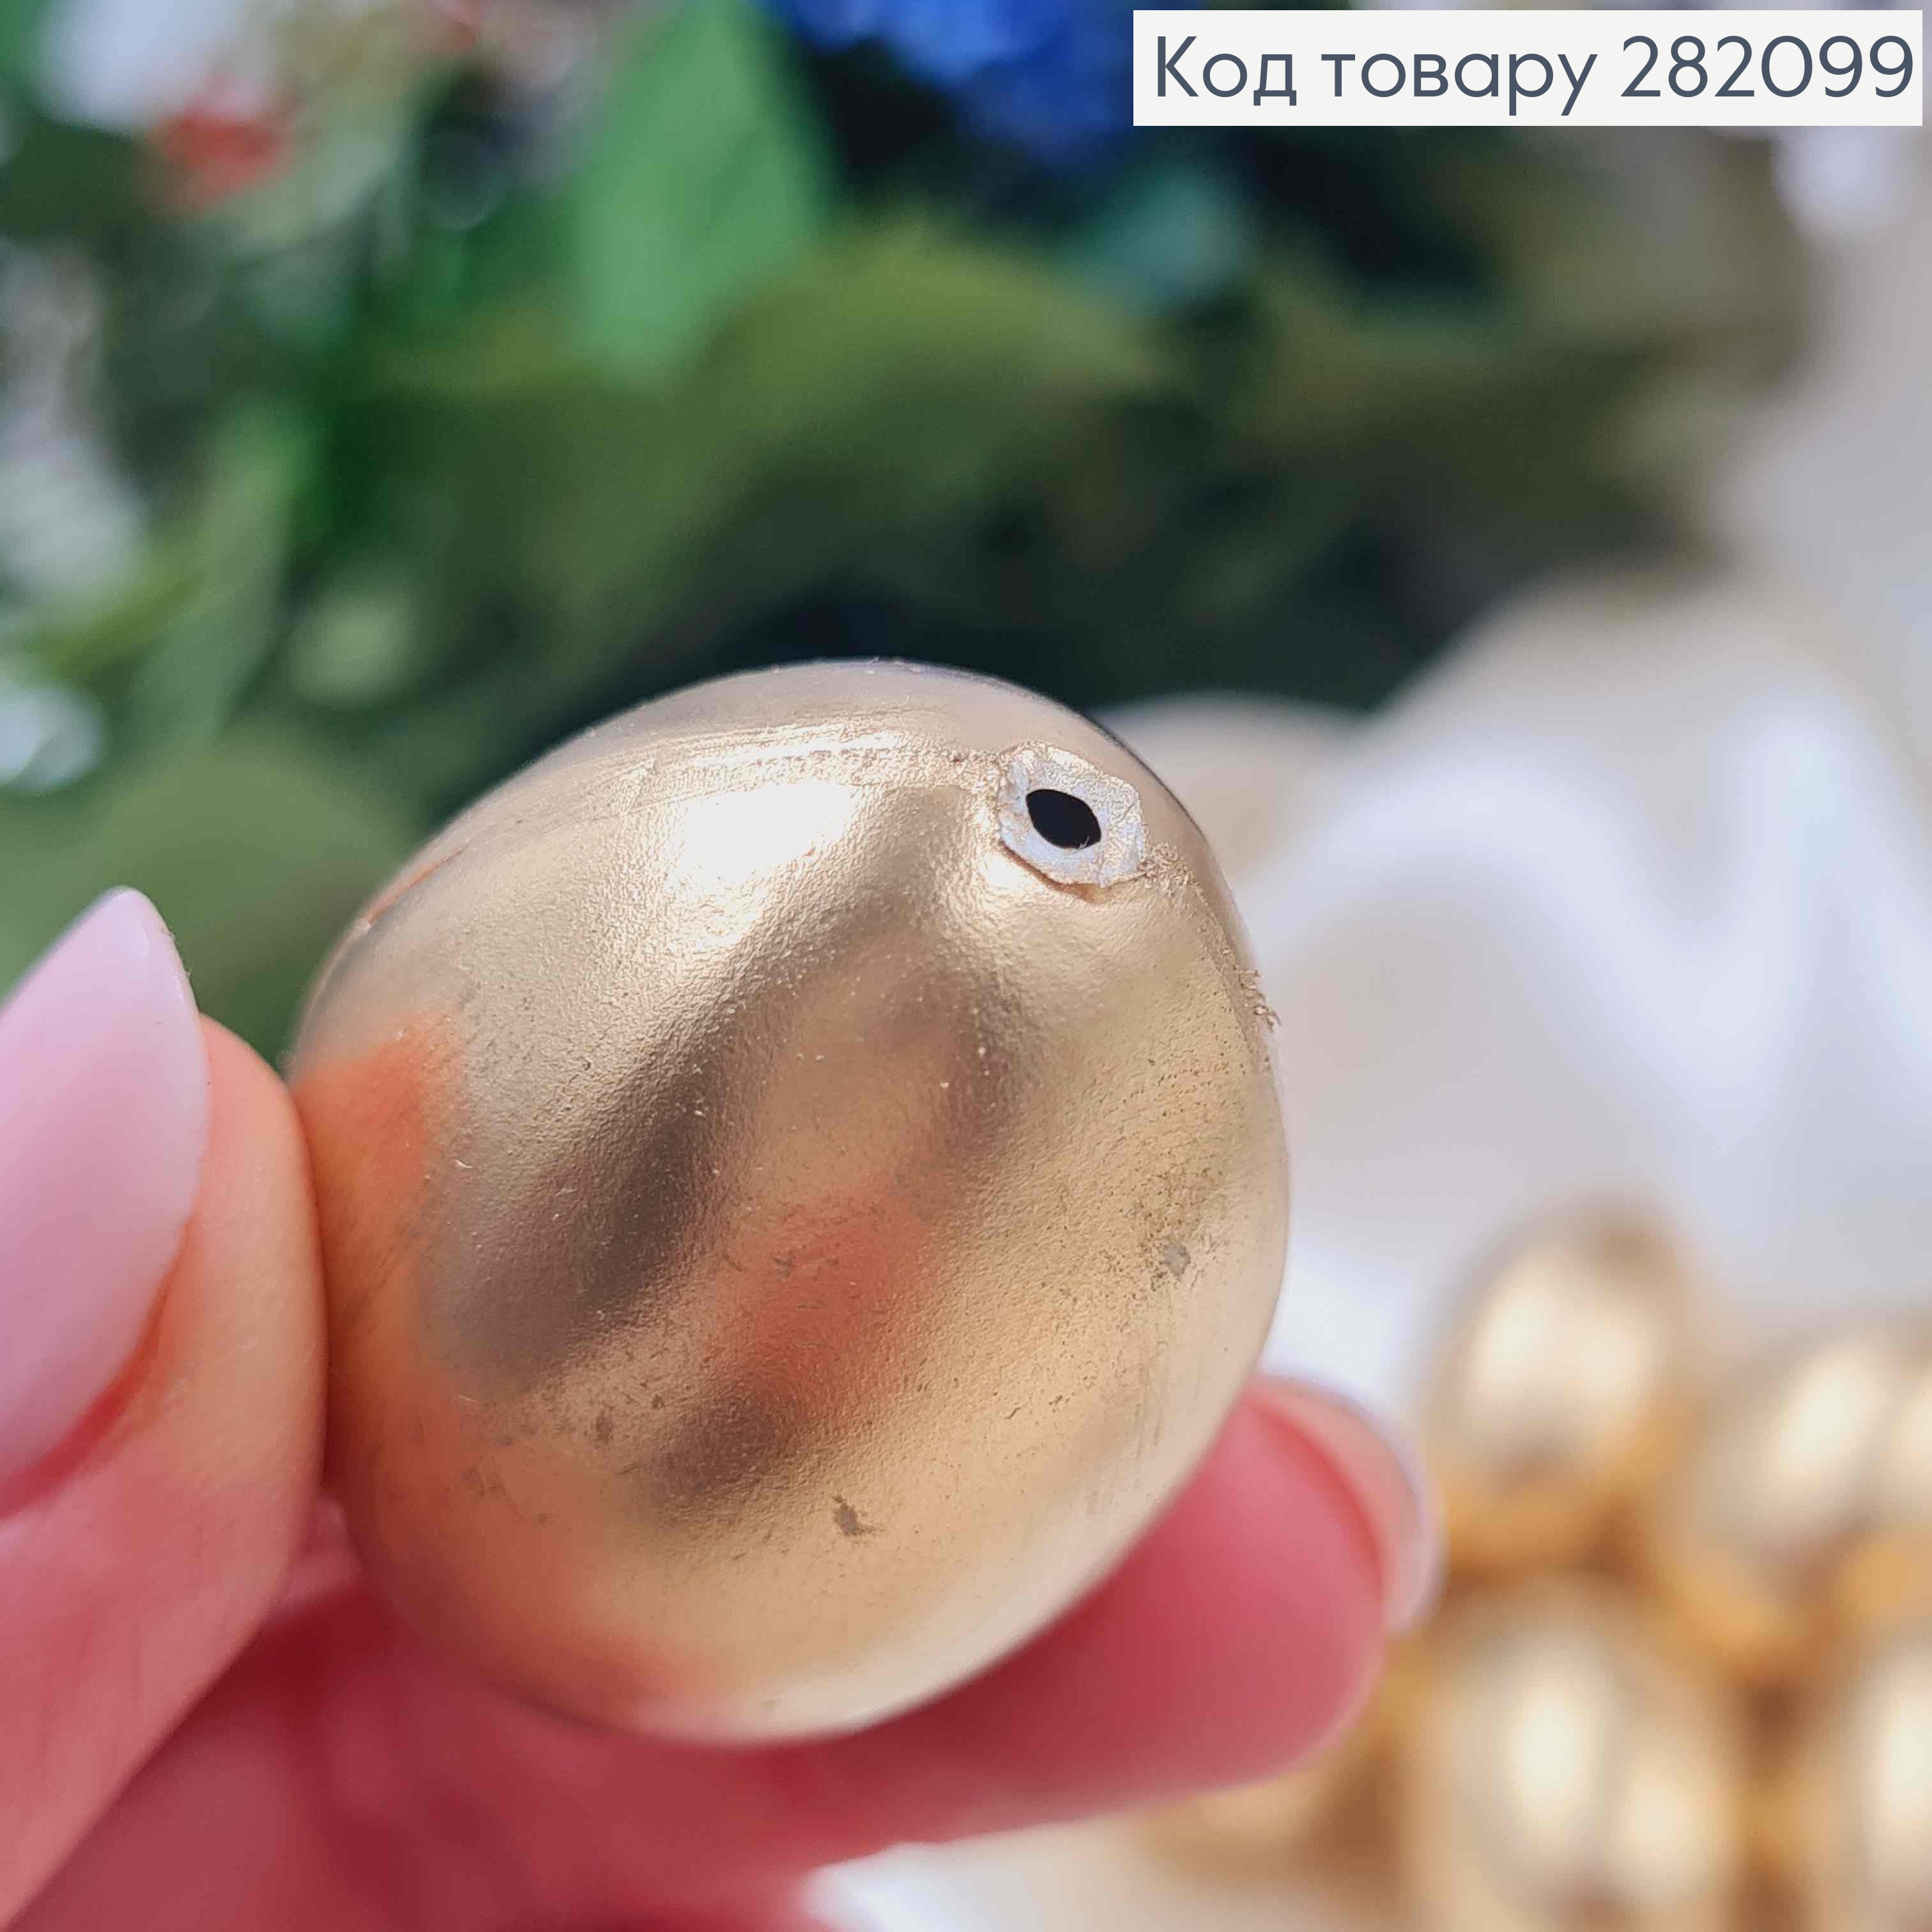 Яйце пластикове (6шт) ЗОЛОТОГО кольору, як перепелине, 3,8*2,7см, Україна 282099 фото 2